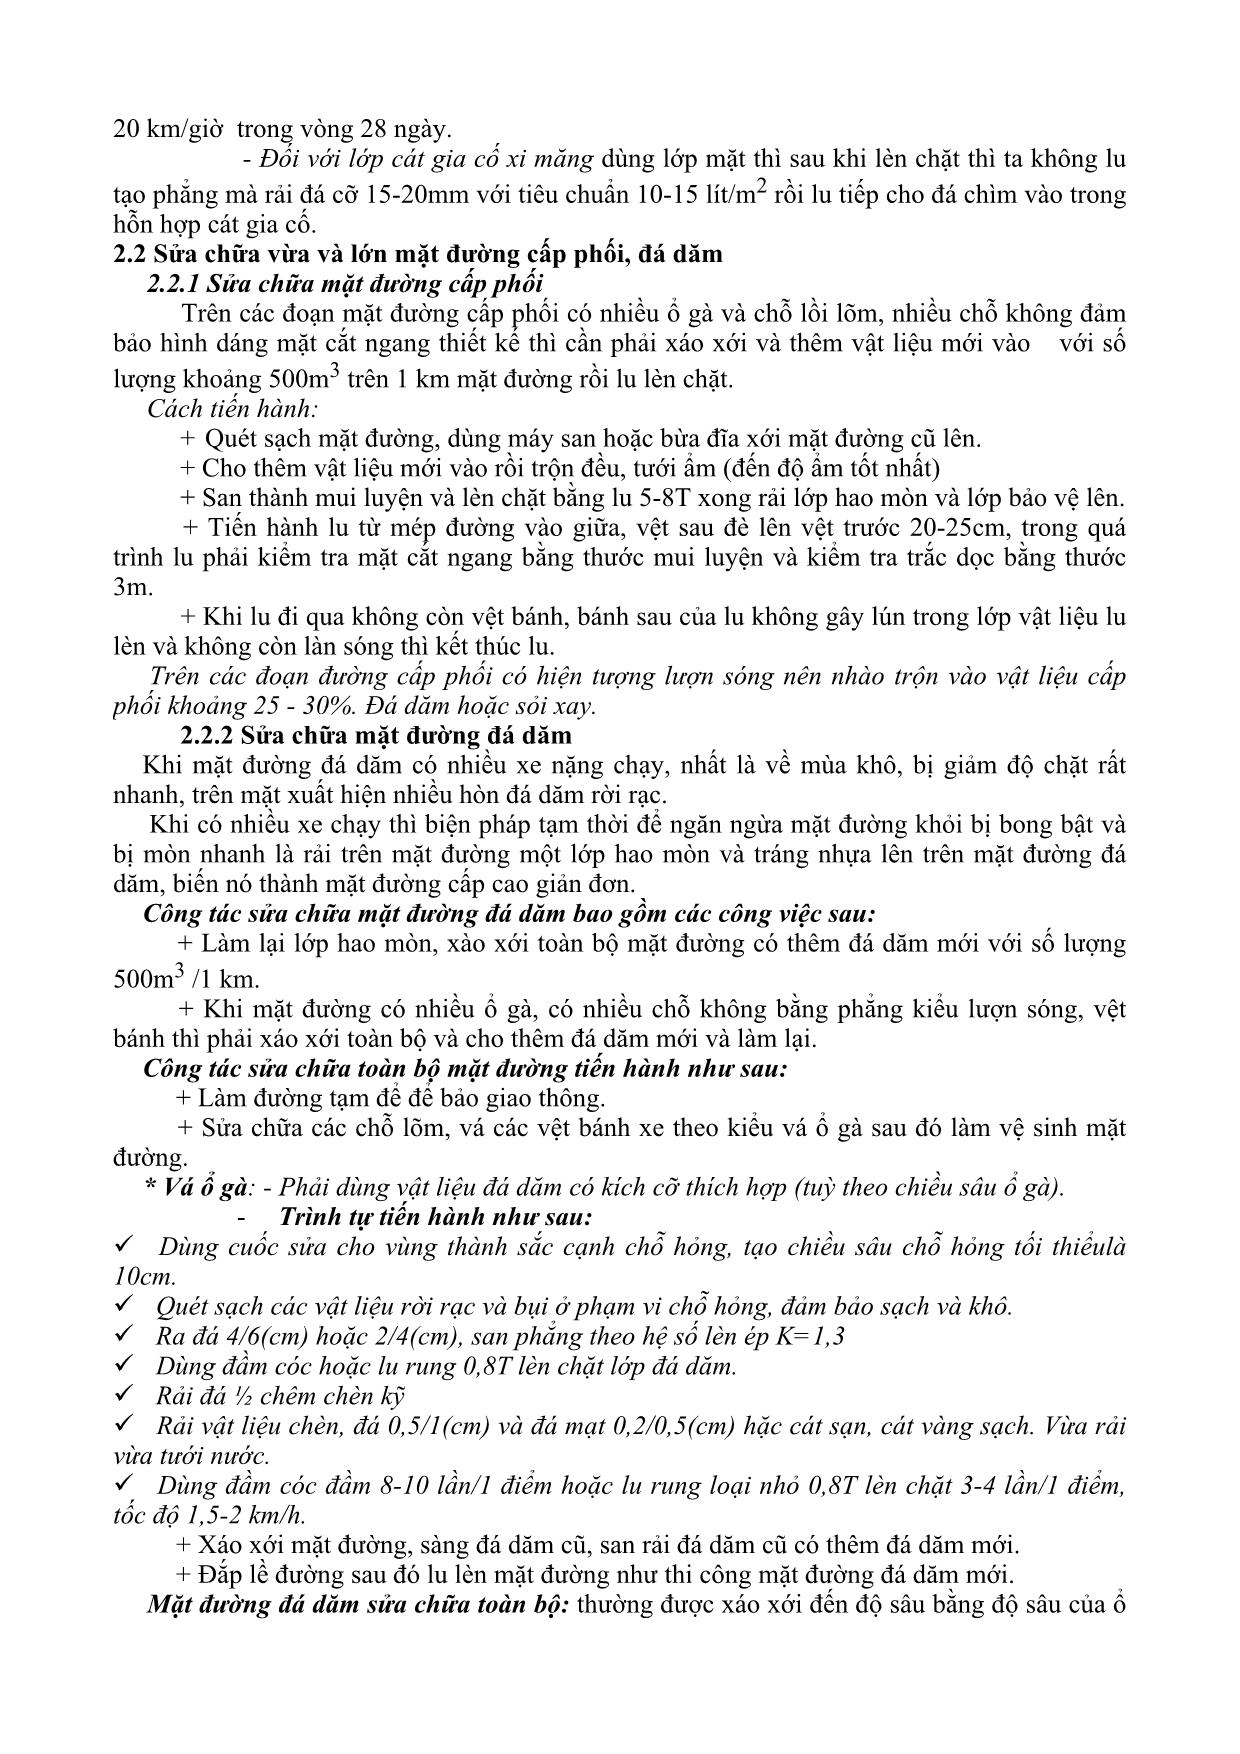 Giáo trình Khai thác và kiểm định cầu - Chương 5: Phân loại sữa chữa và kỹ thuật sửa chữa đường trang 4